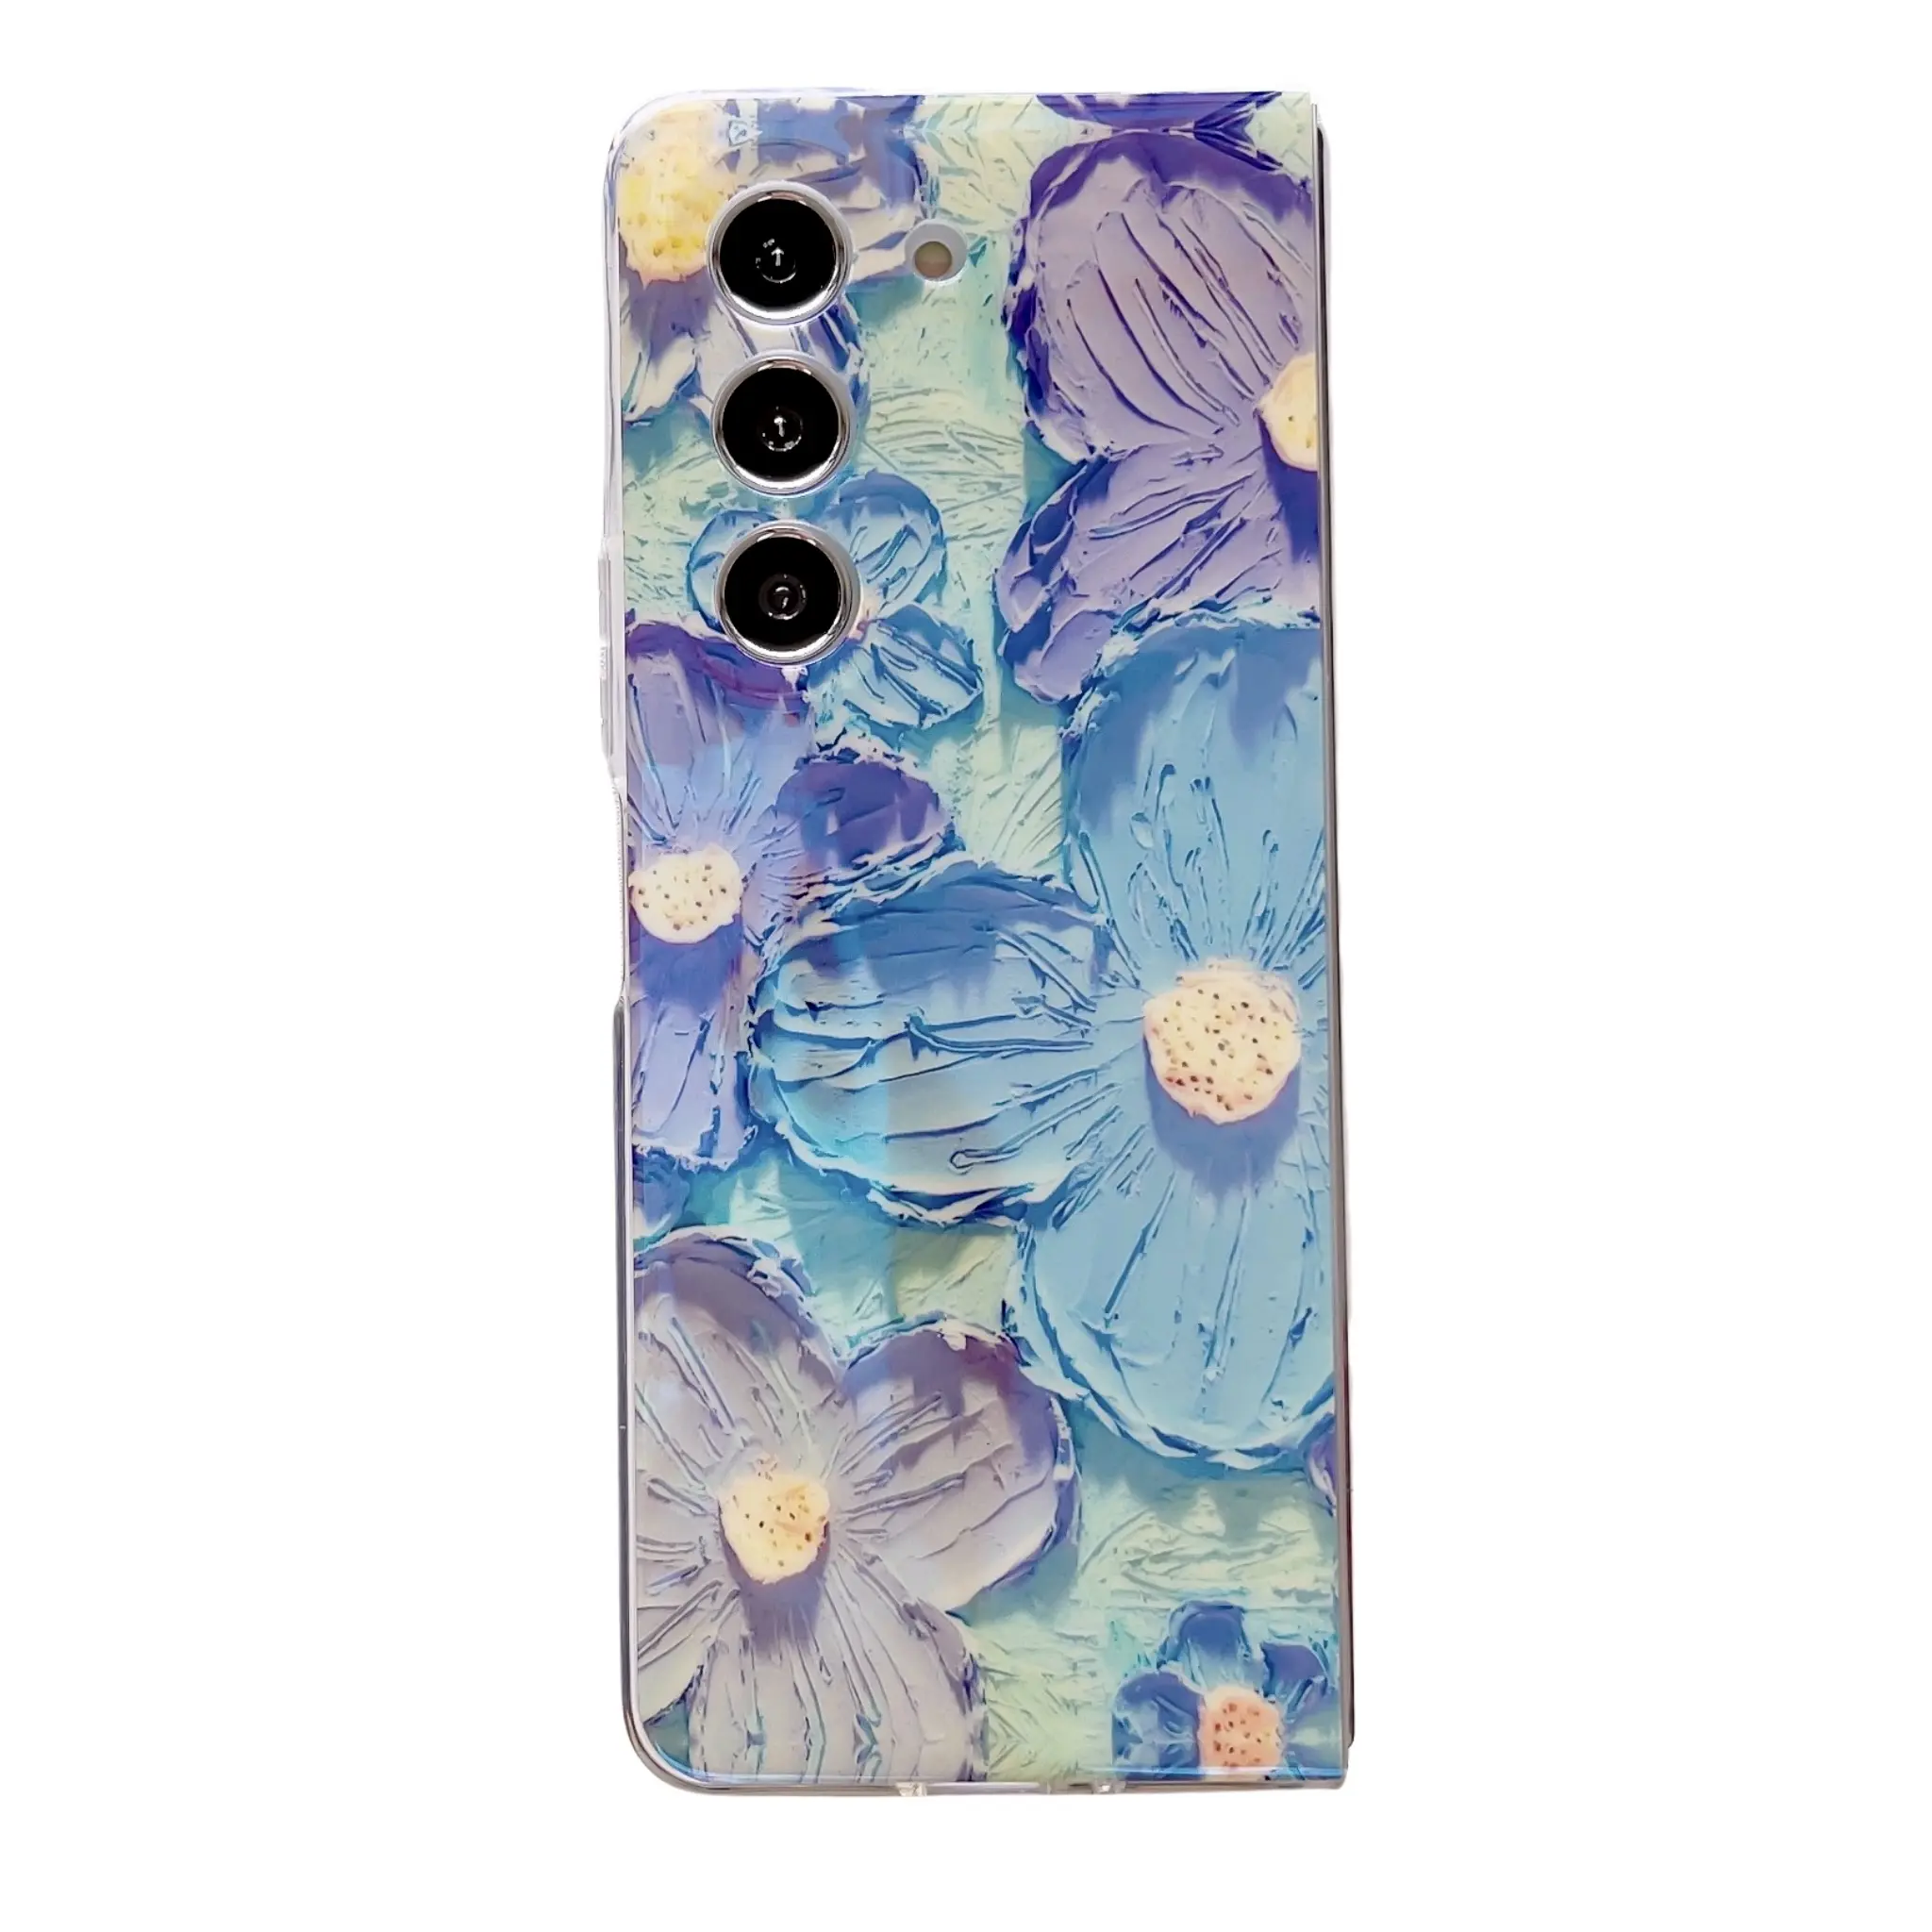 Capa protetora de celular em TPU macio para Samsung Galaxy Z Fold 3 4 5 com desenho de flores e pintura a óleo